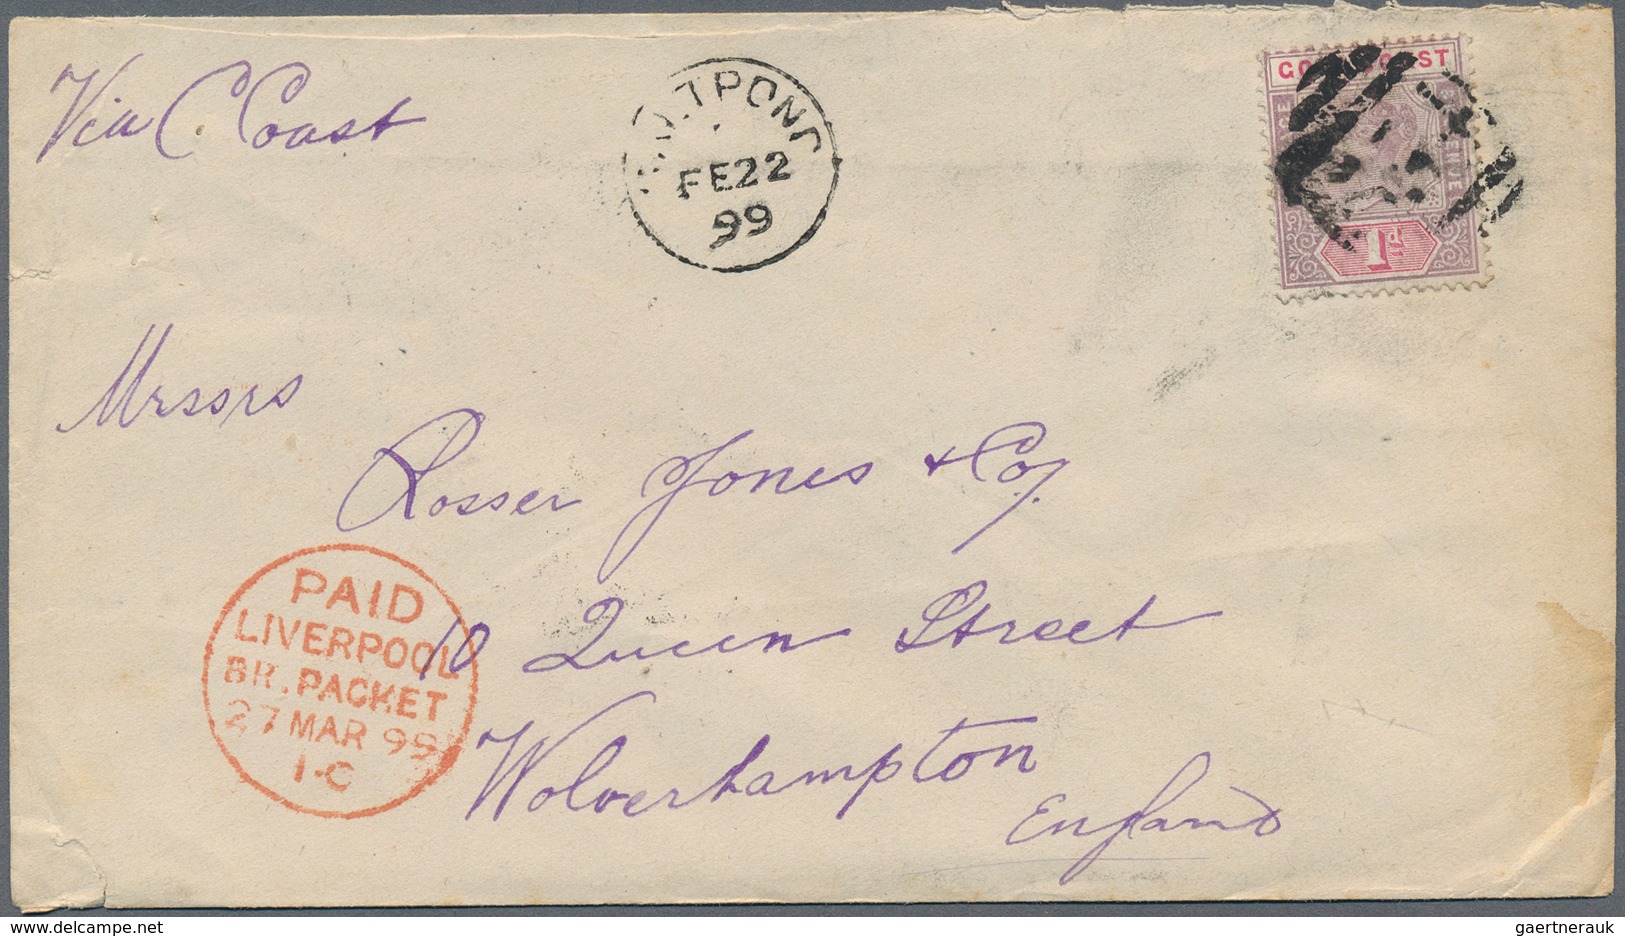 22633 Goldküste: 1894/1952: 36 interesting envelopes, picture postcards and postal stationeries including